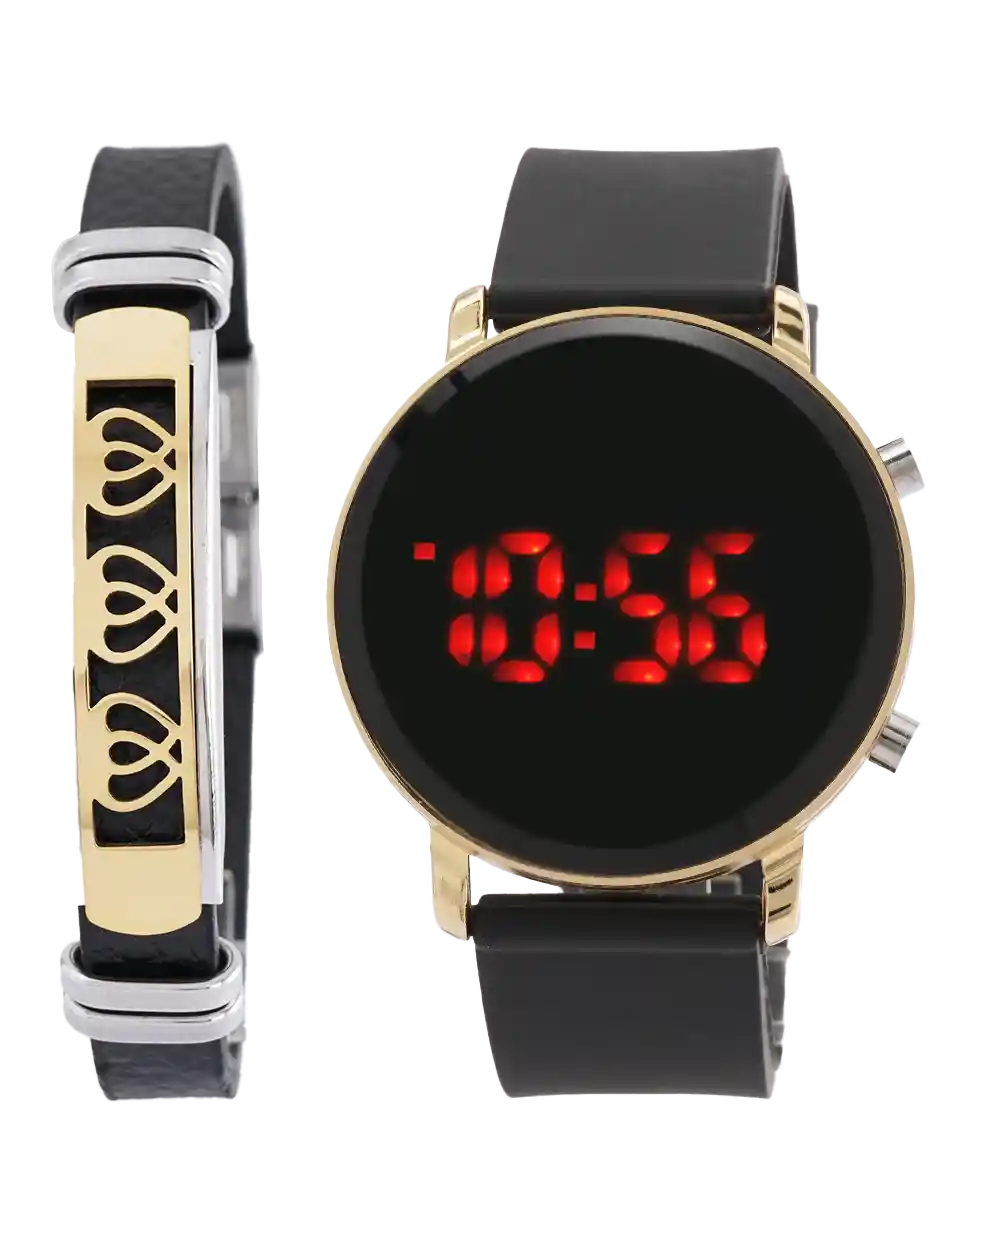 ست ساعت مچی دیجیتال و دستبند مدل 1872 ساعت LED طرح اپل واچ با دستبند قیمت 220 هزارتومان به همراه ارسال رایگان به سراسر ایران جعبه ی ساعت